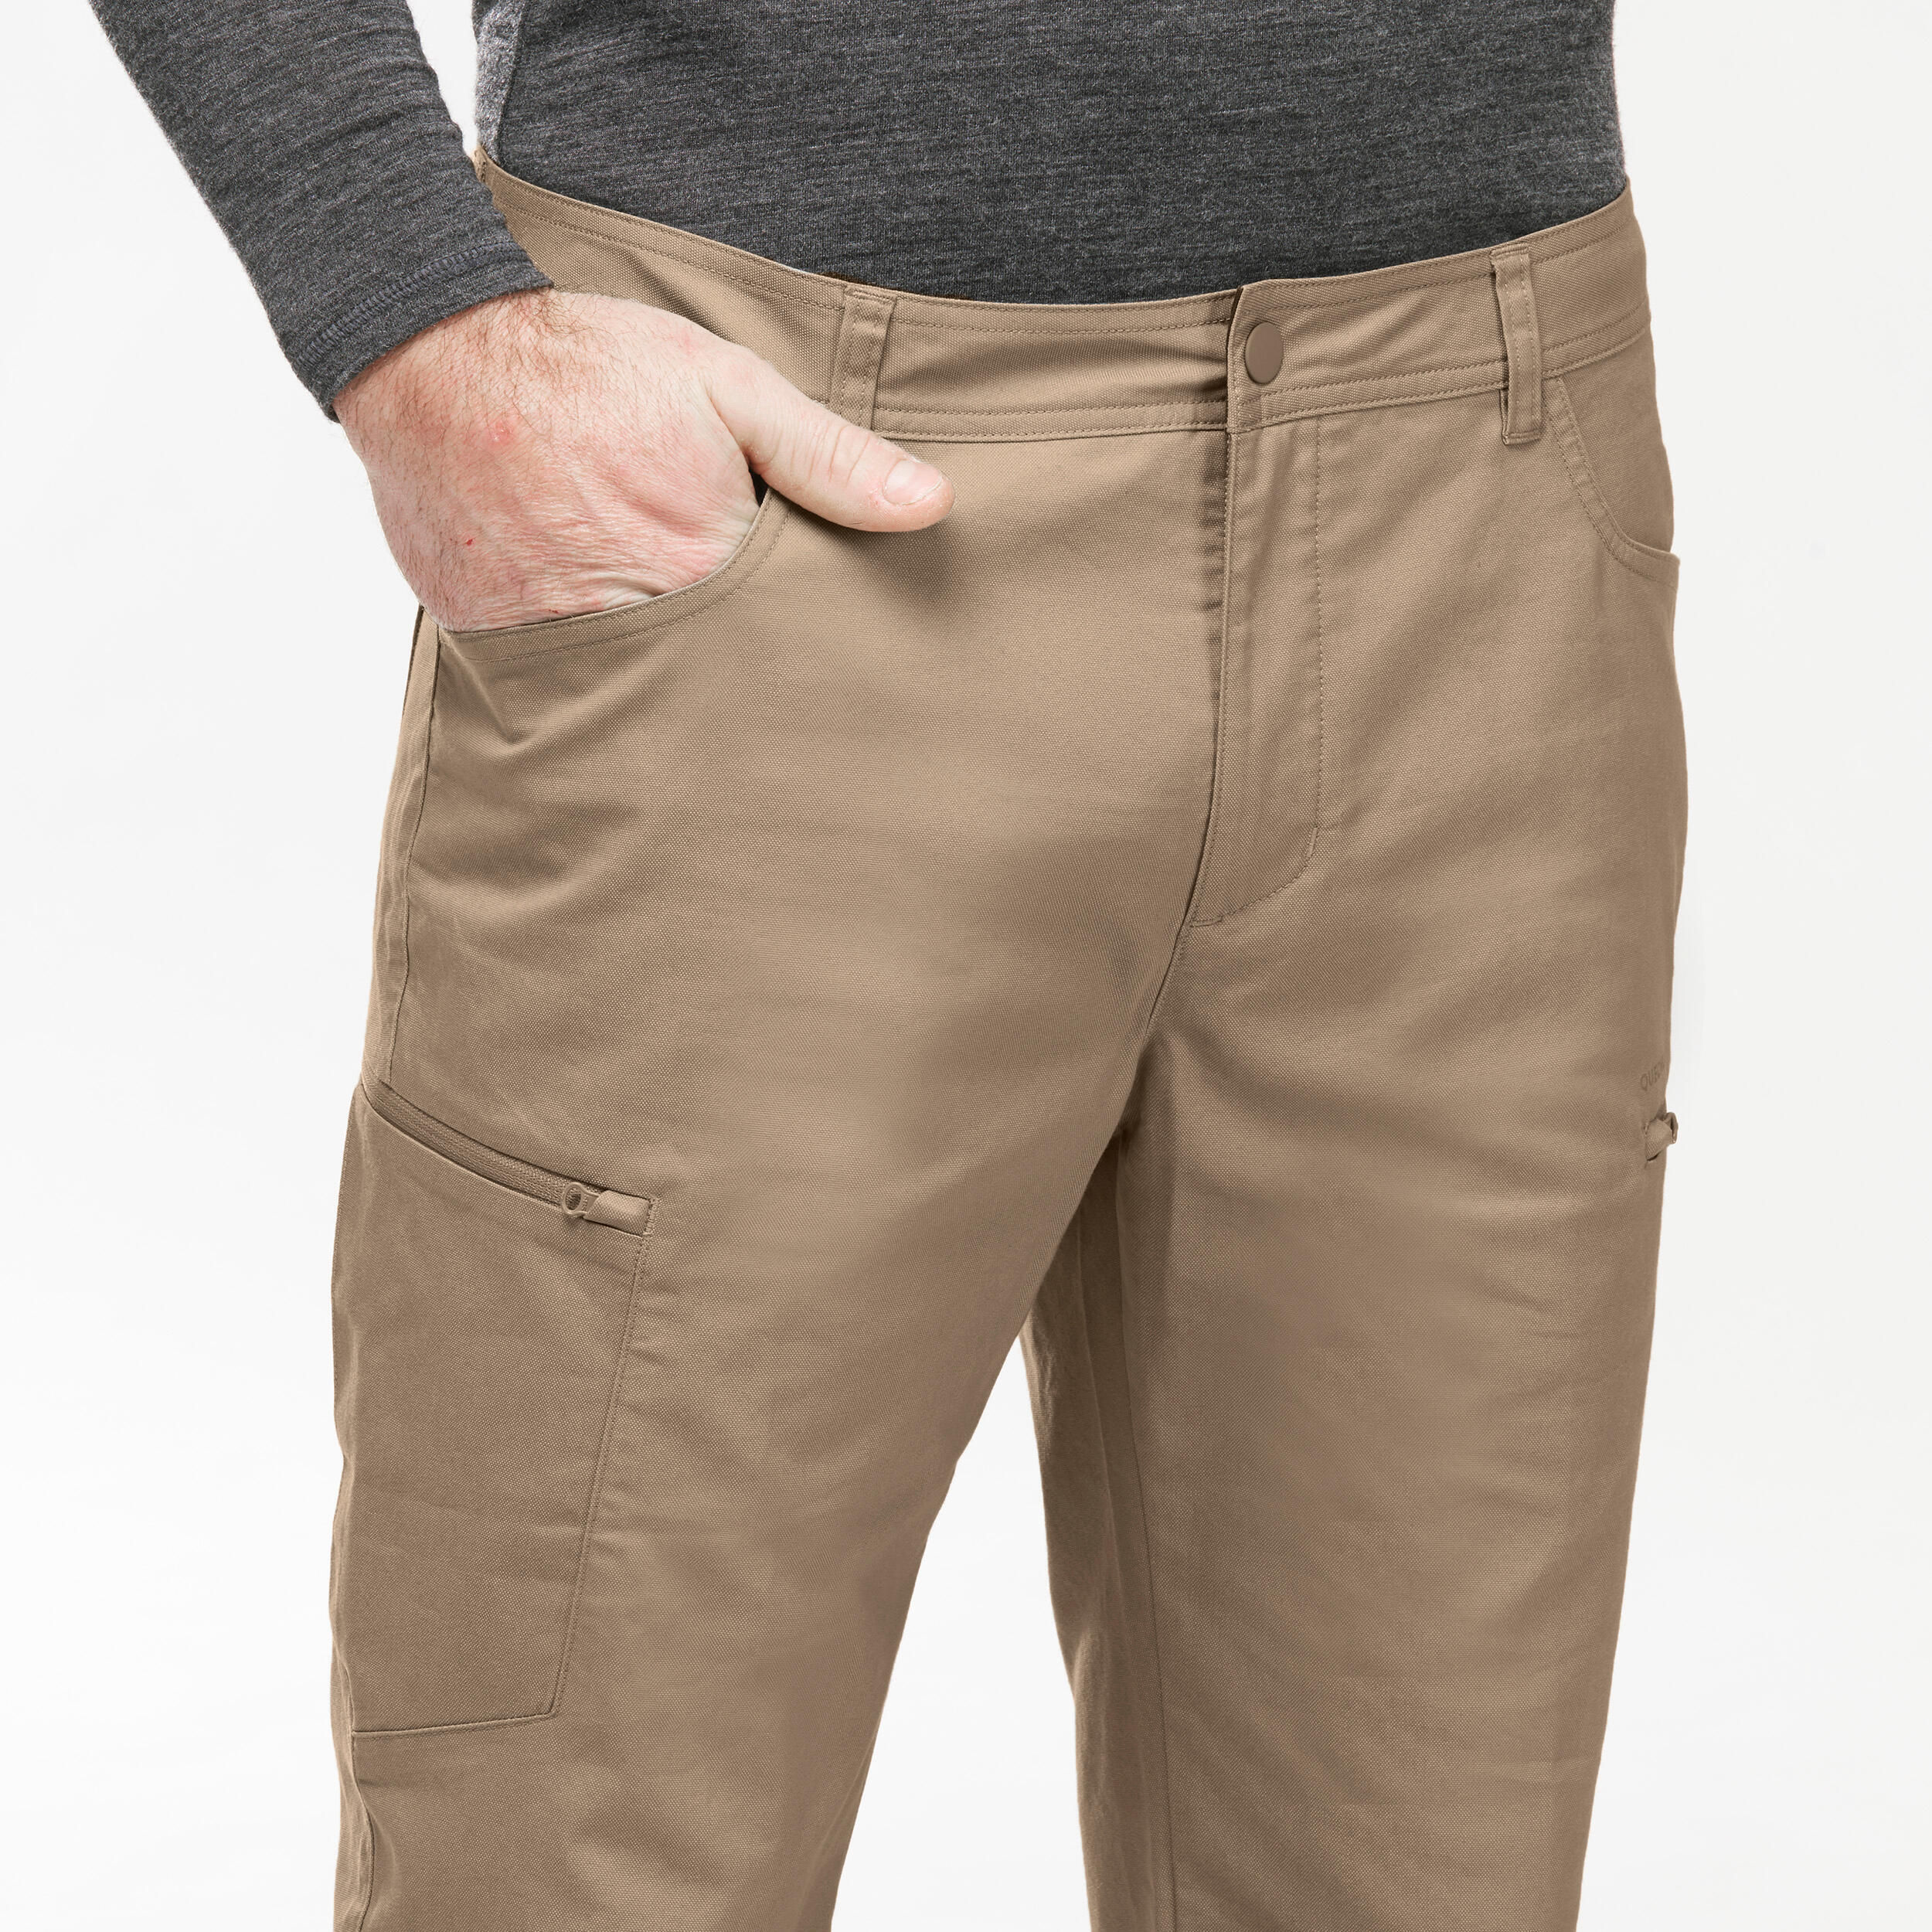 Men's NH500 Regular off-road hiking trousers 11/11